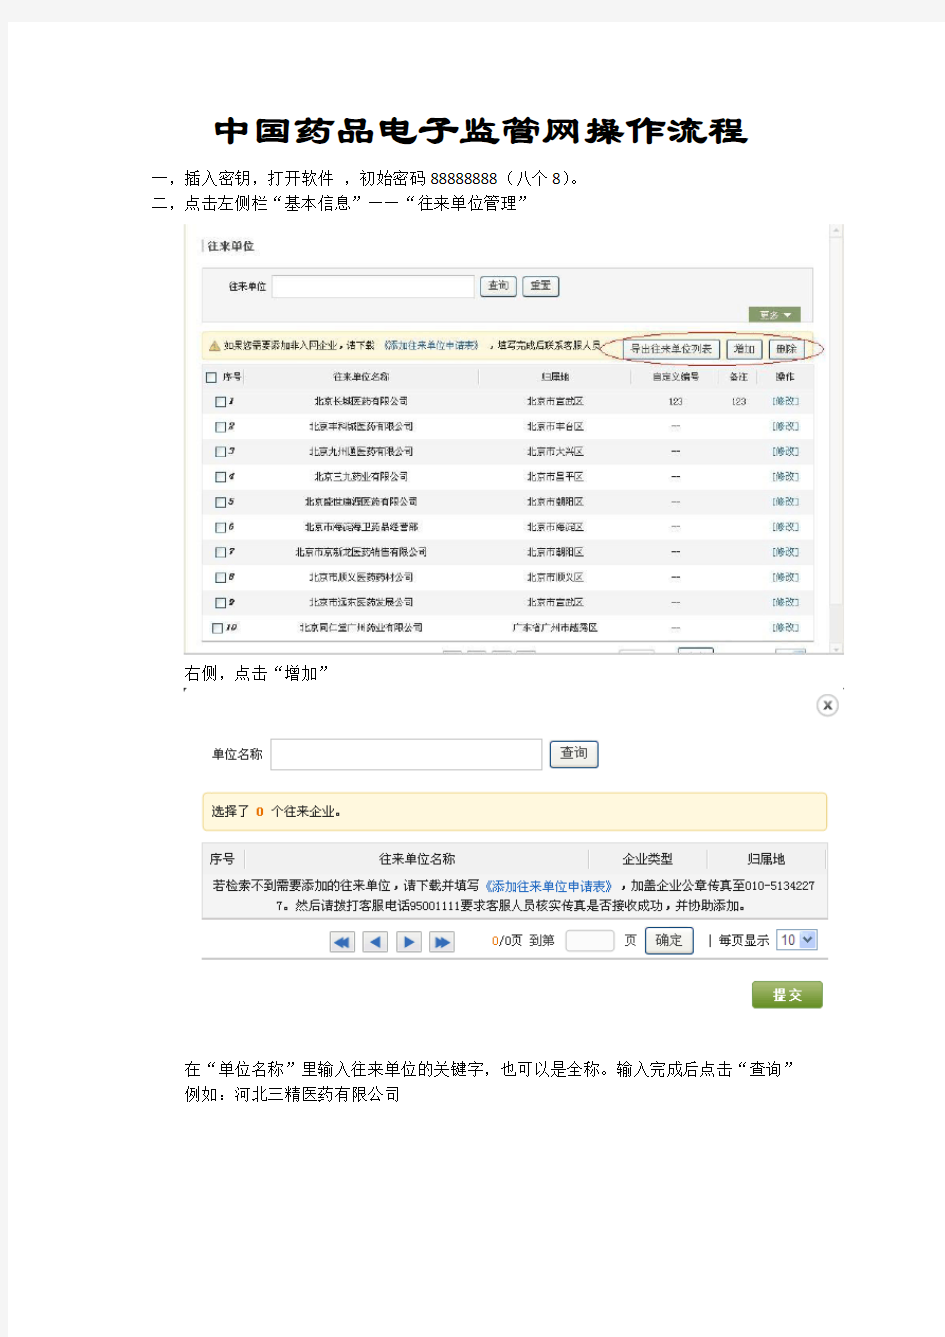 中国药品电子监管网简单操作流程